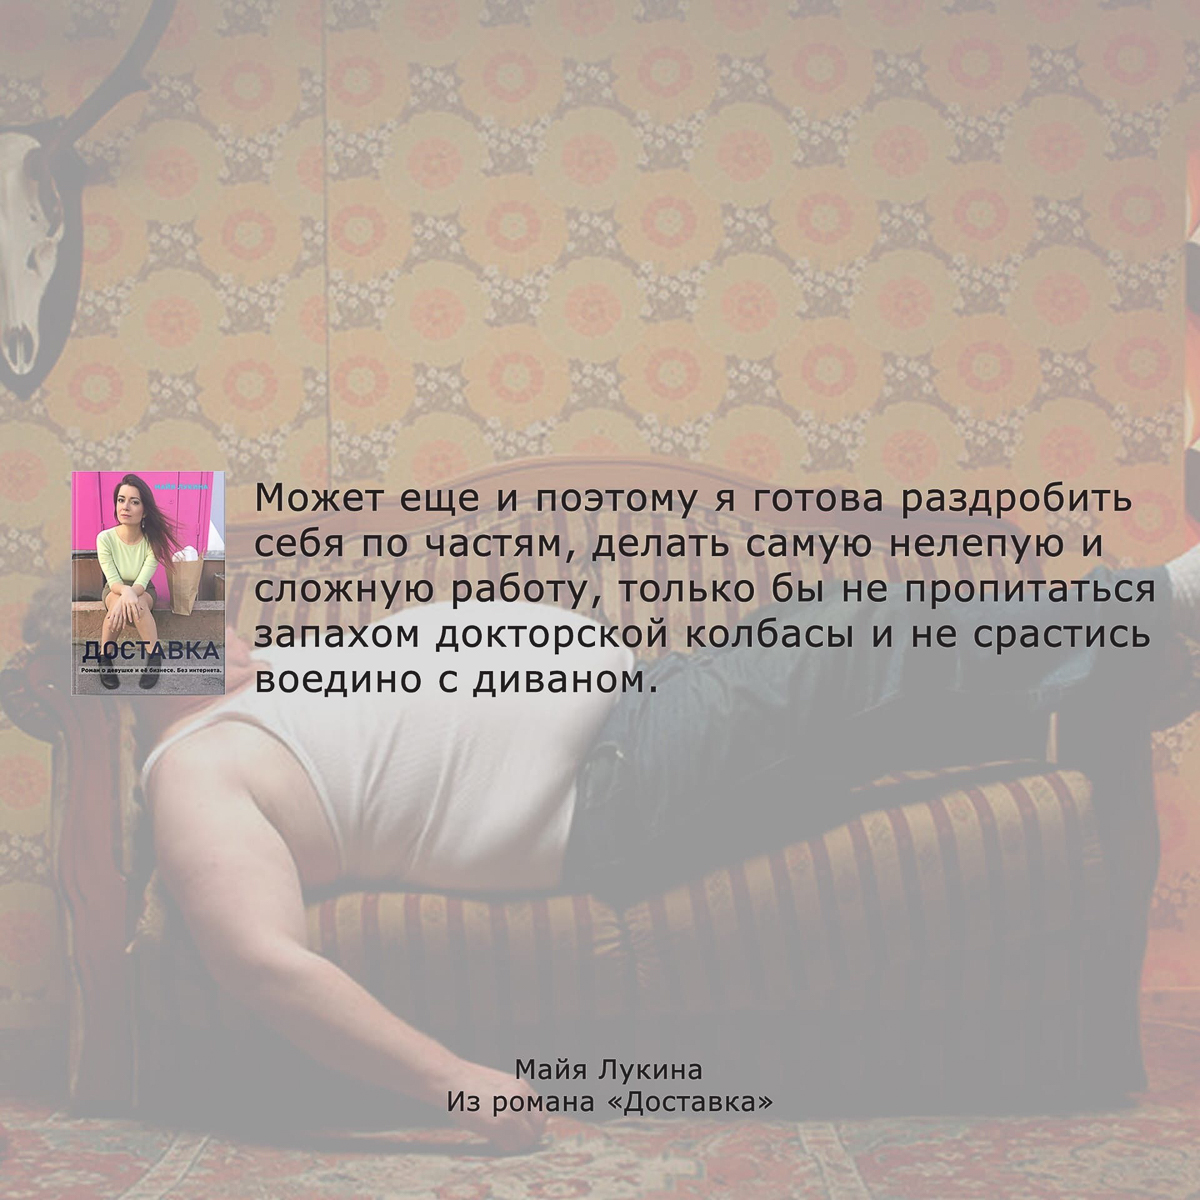 Поэтесса Майя Лукина попробовала силы в прозе. И написала роман «Доставка». События и персонажи вымышленные, но все же фантазия основана на реальной истории